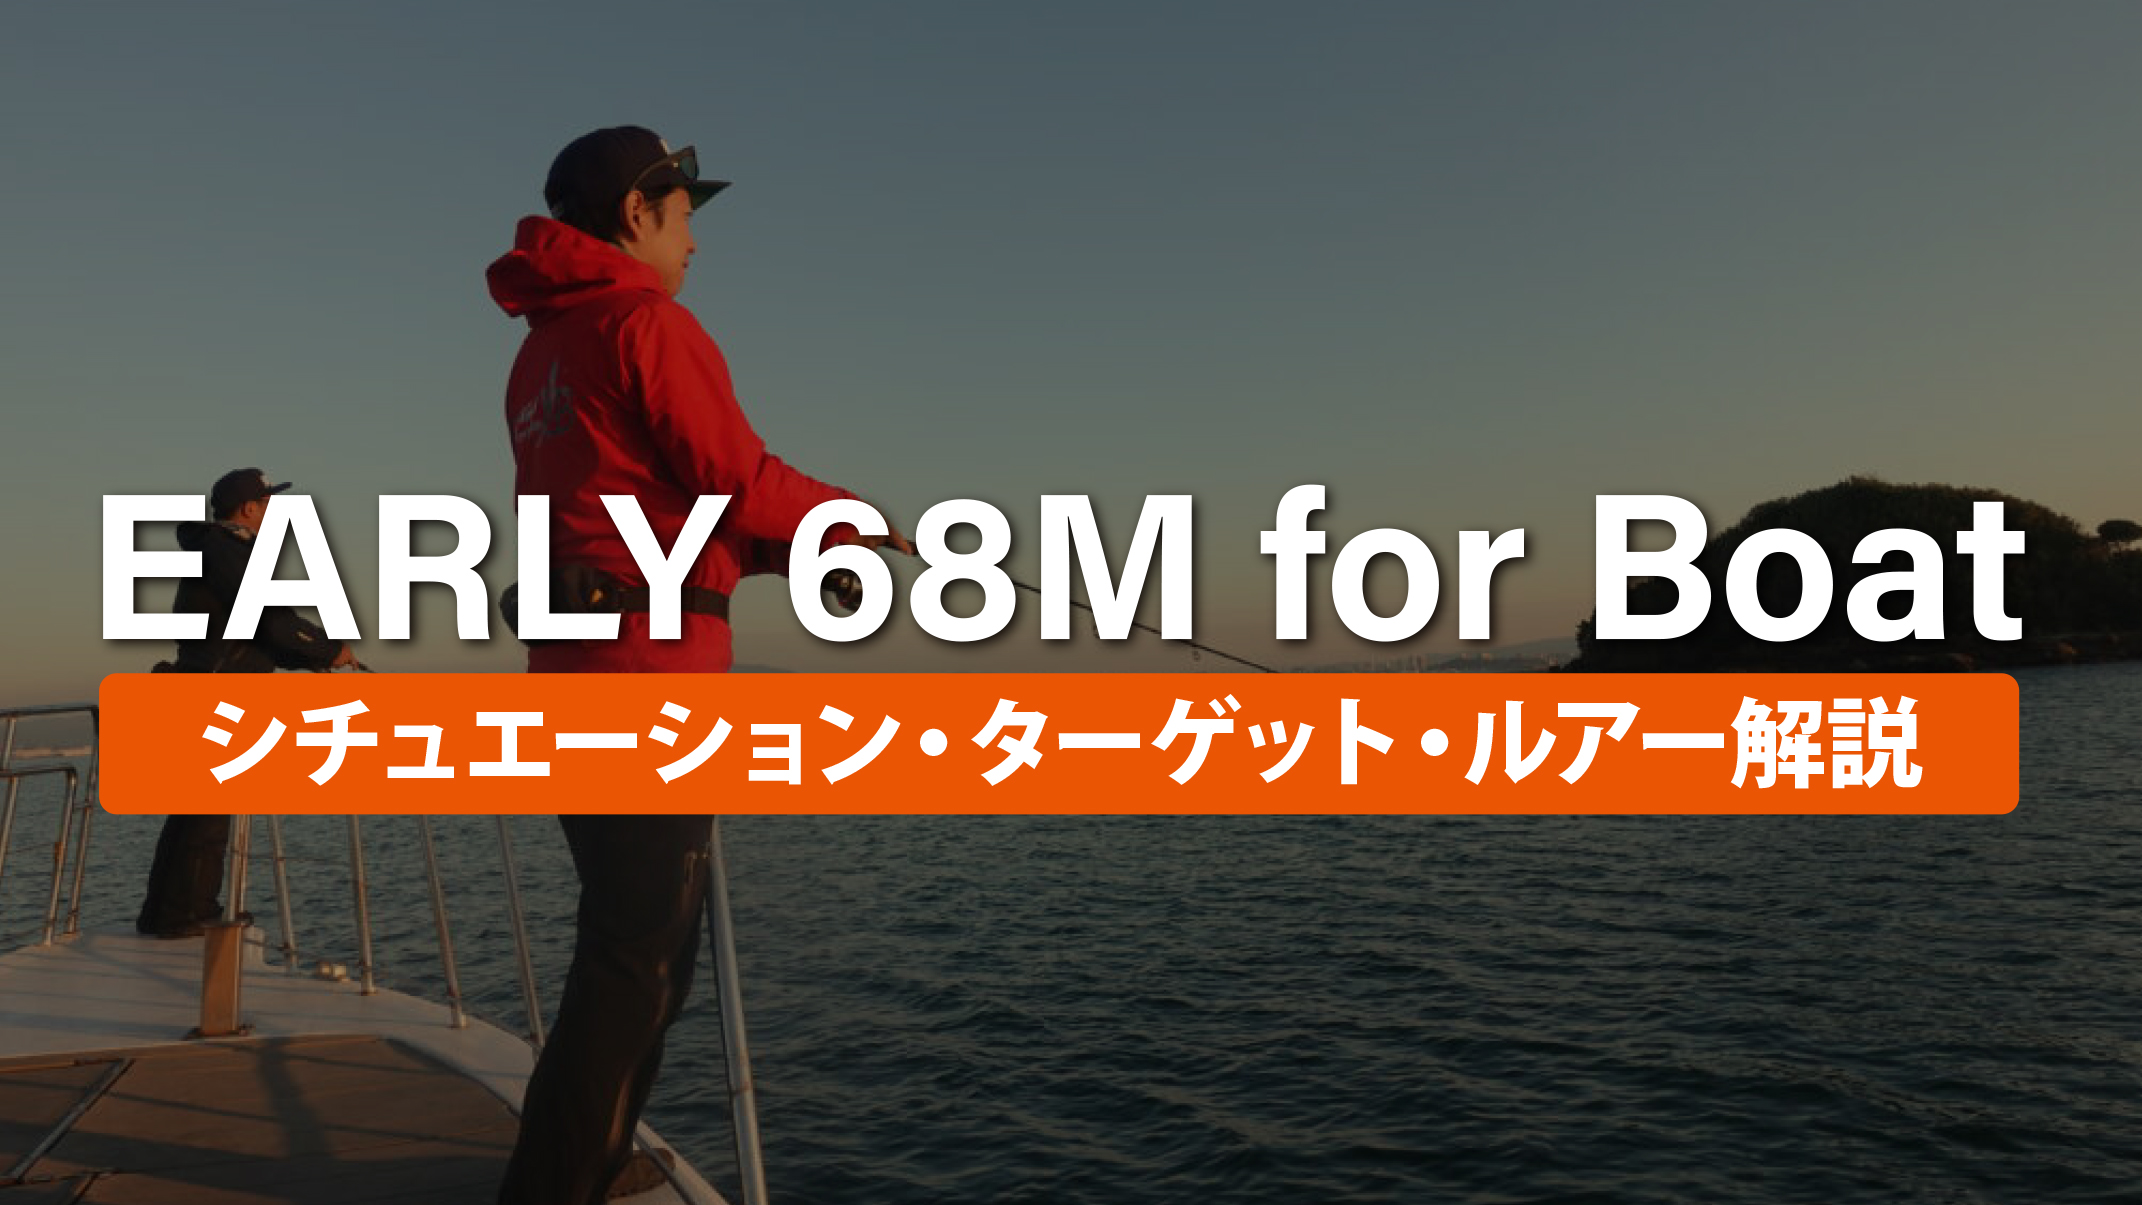 【解説ブログ】EARLY 68M for Boat シチュエーション・ターゲット・ルアー解説